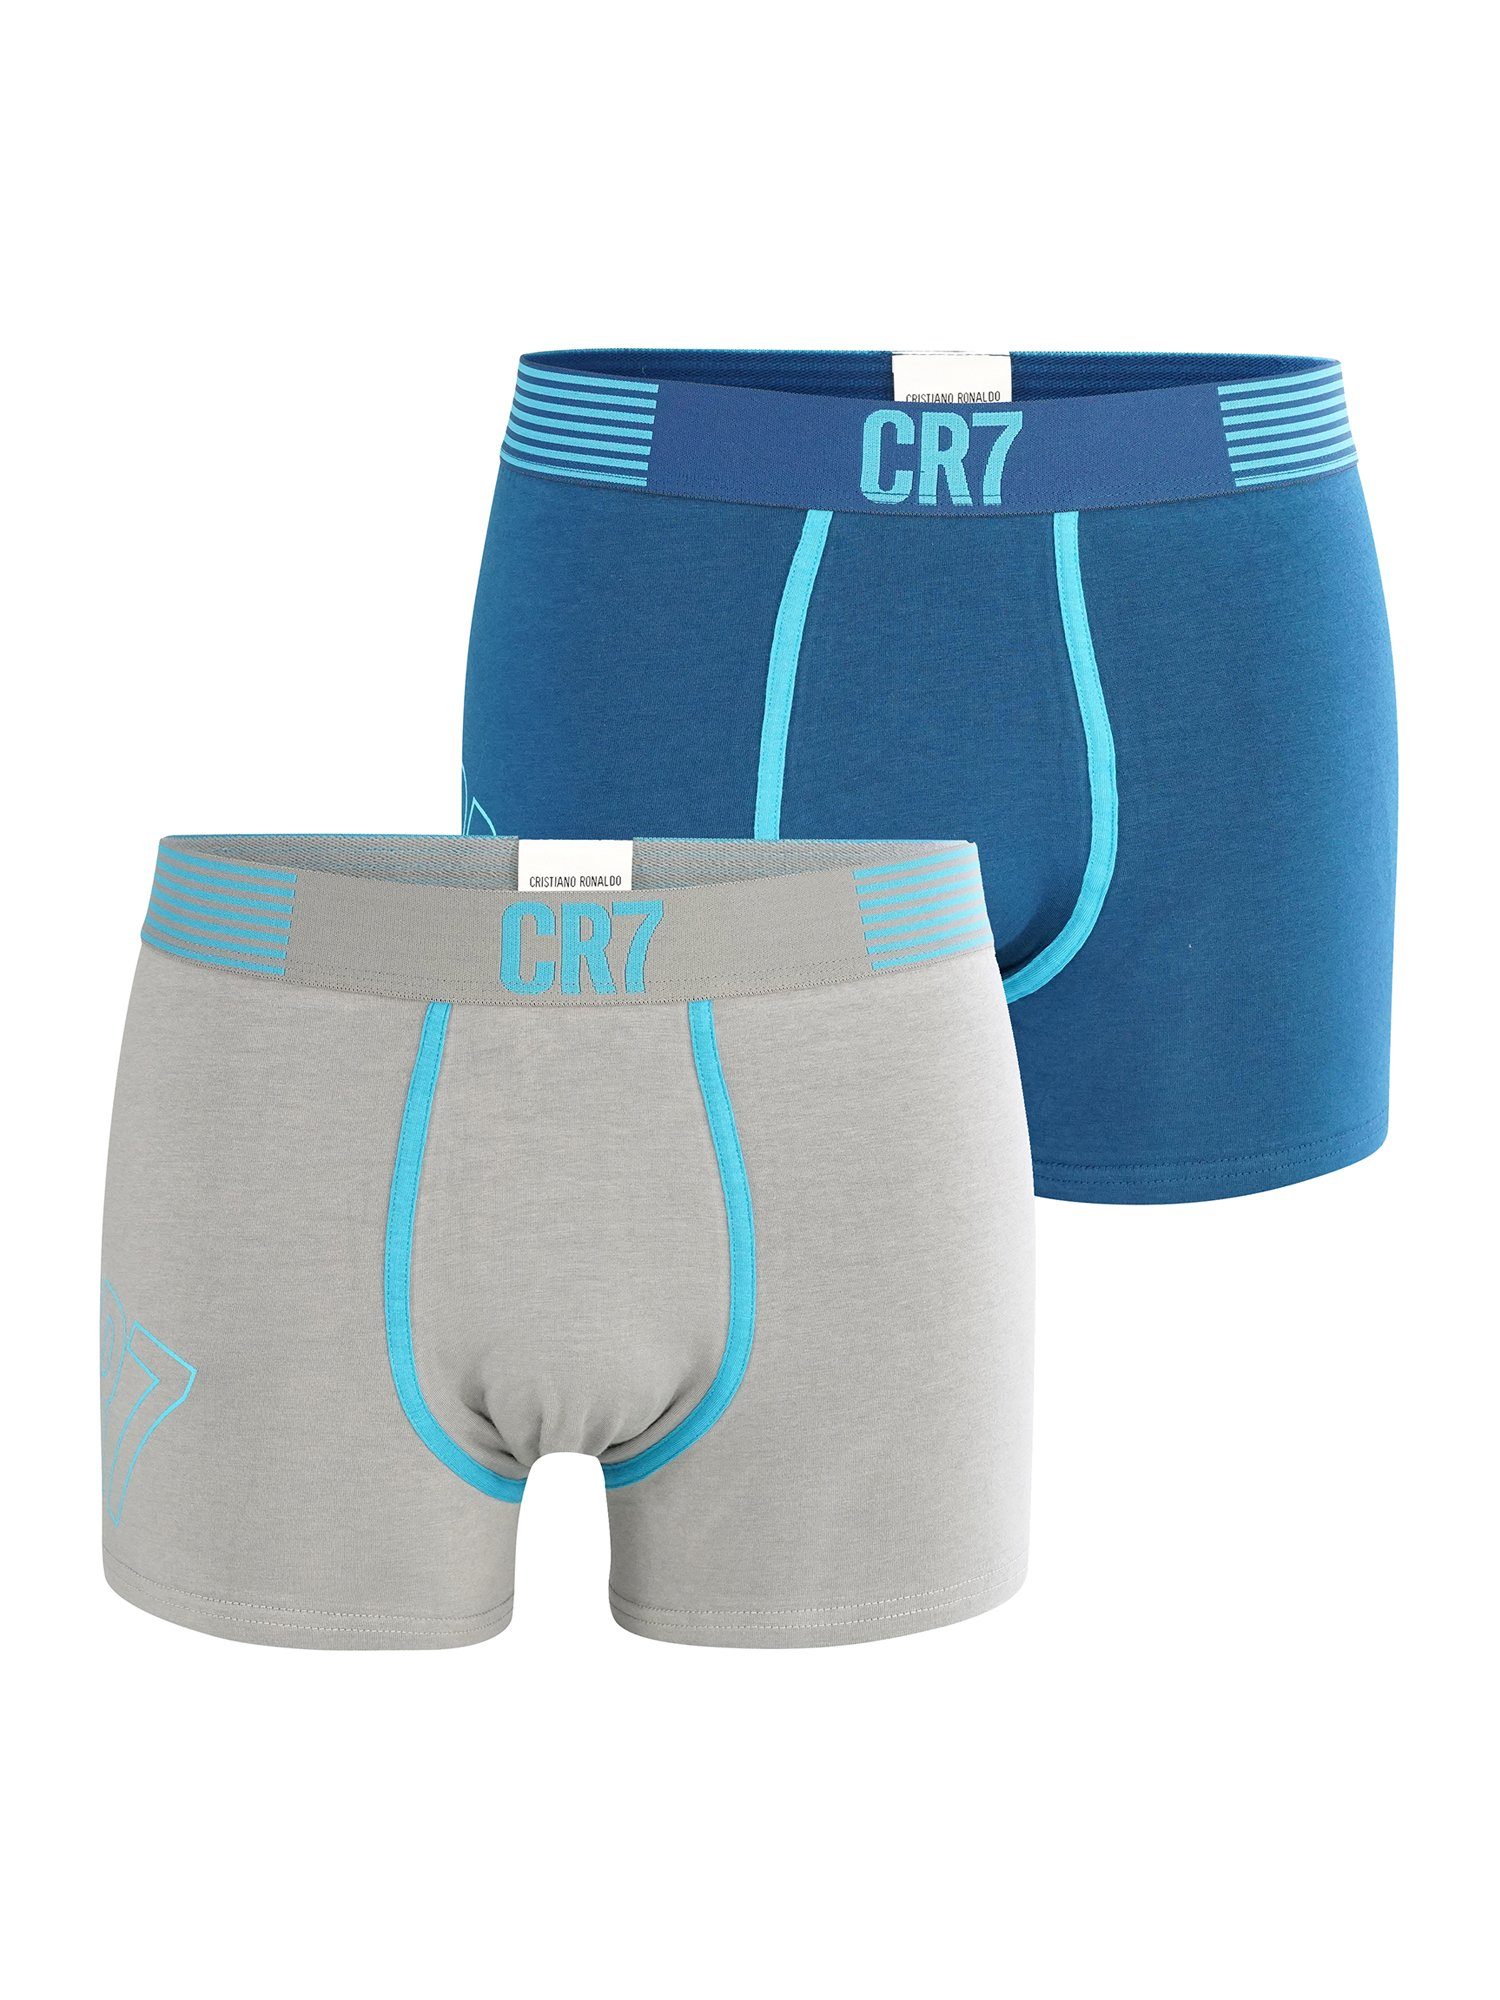 Pants Retro FASHION grau/blau 2-Pack CR7